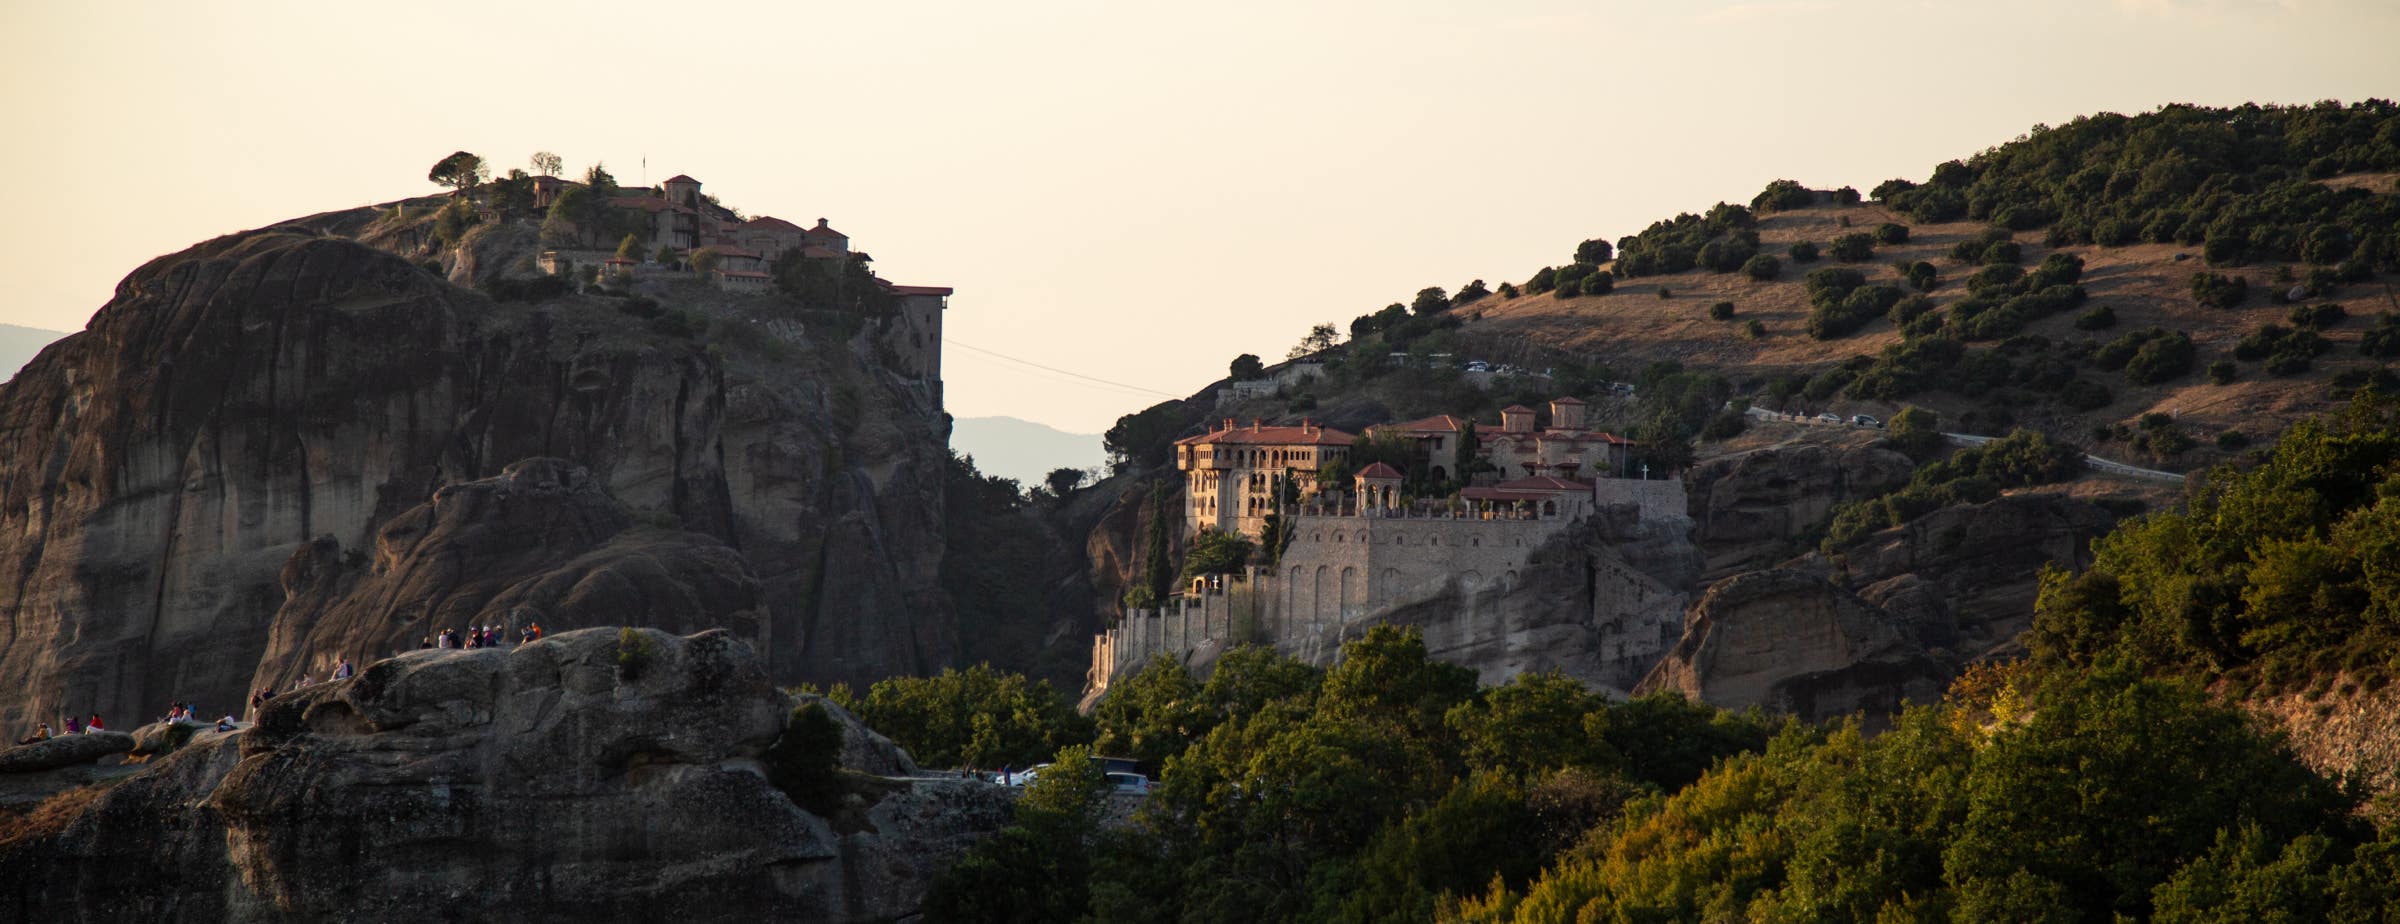 Η εικόνα δείχνει μια άποψη των βράχων και των δύο μοναστηριών των Μετεώρων. Το αριστερό μοναστήρι βρίσκεται στην κορυφή ενός βράχου και το δεξί μοναστήρι είναι χτισμένο πάνω σε βράχους στην πλευρά μεγαλύτερου λόφου.